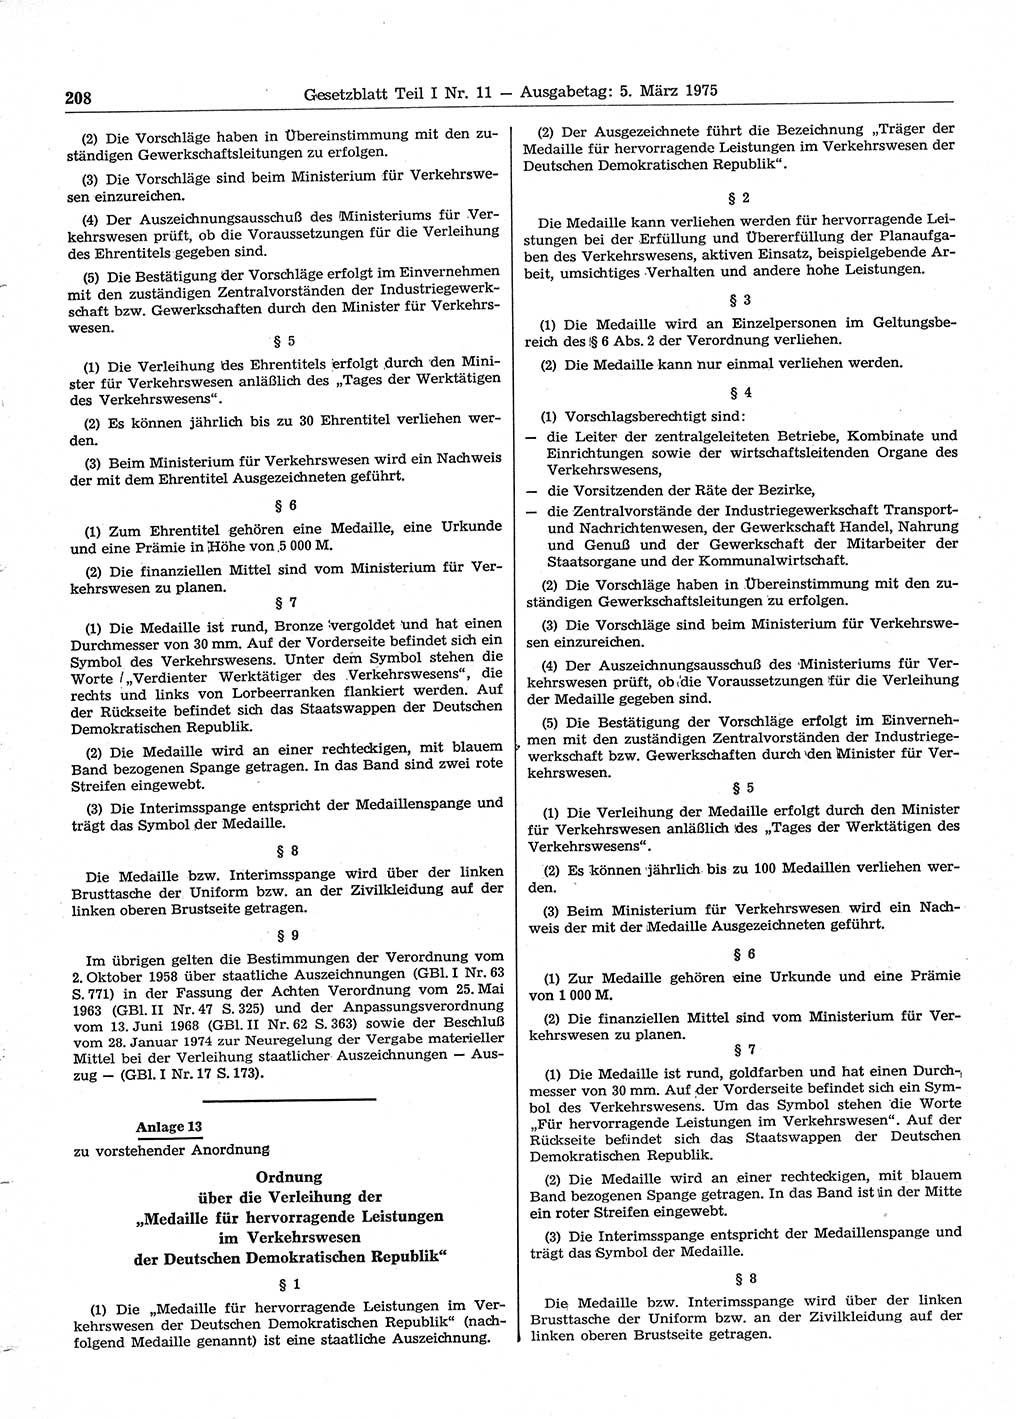 Gesetzblatt (GBl.) der Deutschen Demokratischen Republik (DDR) Teil Ⅰ 1975, Seite 208 (GBl. DDR Ⅰ 1975, S. 208)